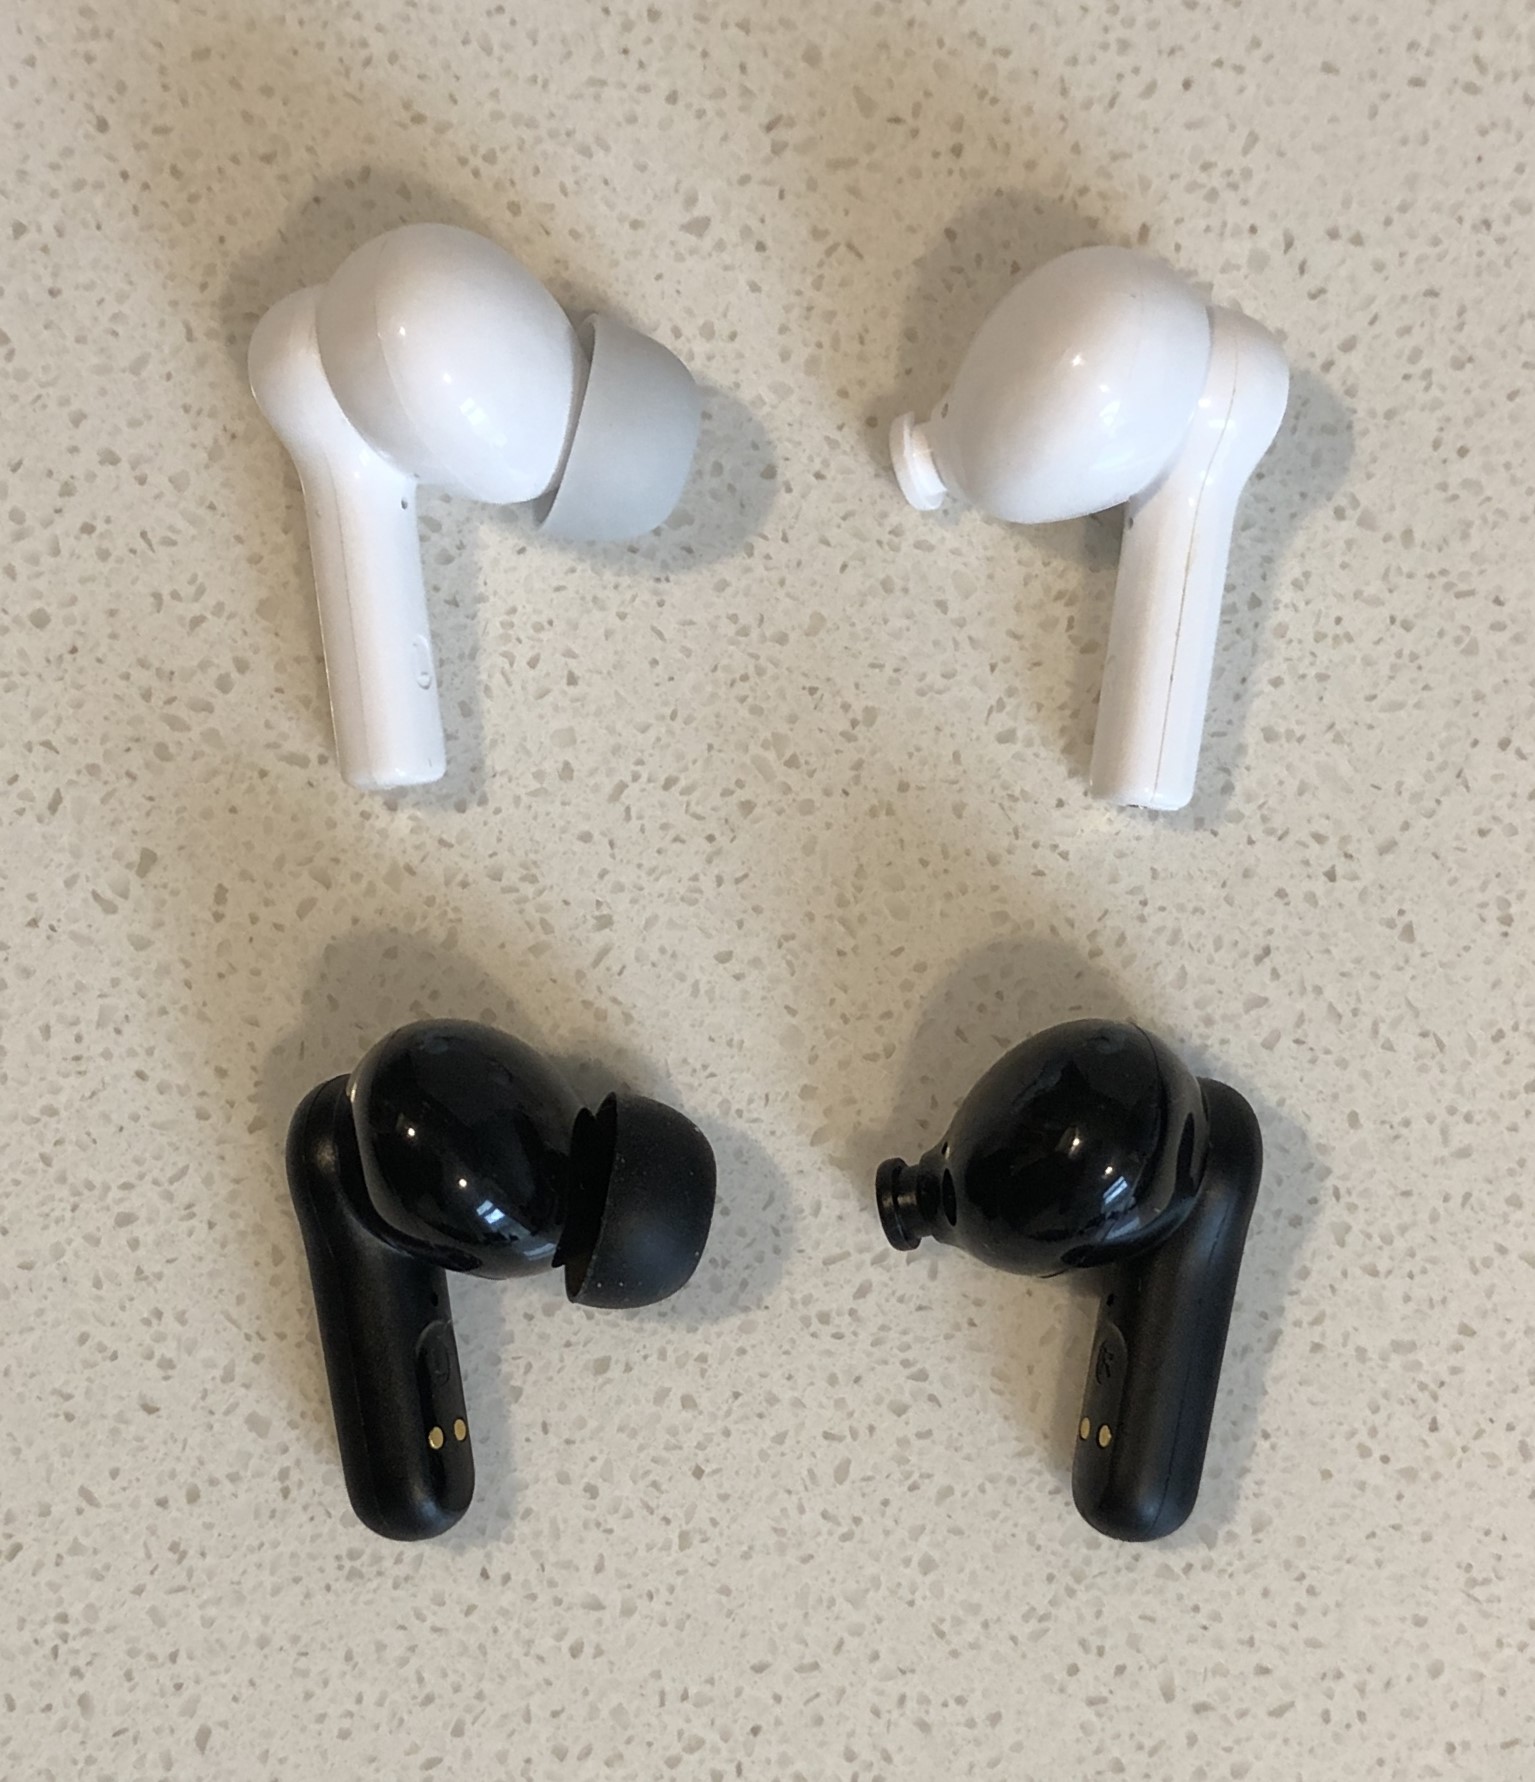 Soundcore Life P2 Mini vs Life P2i earbud tip and nozzle